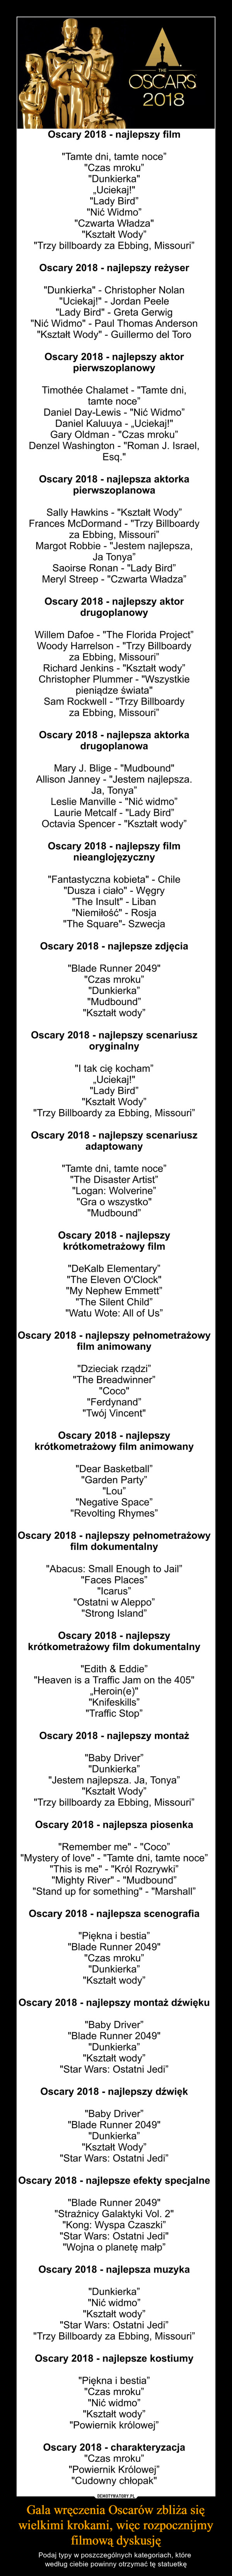 Gala wręczenia Oscarów zbliża się wielkimi krokami, więc rozpocznijmy filmową dyskusję – Podaj typy w poszczególnych kategoriach, które według ciebie powinny otrzymać tę statuetkę Oscary 2018 - najlepszy film"Tamte dni, tamte noce”"Czas mroku”"Dunkierka"„Uciekaj!""Lady Bird”"Nić Widmo”"Czwarta Władza""Kształt Wody”"Trzy billboardy za Ebbing, Missouri”Oscary 2018 - najlepszy reżyser"Dunkierka" - Christopher Nolan"Uciekaj!" - Jordan Peele"Lady Bird" - Greta Gerwig"Nić Widmo" - Paul Thomas Anderson"Kształt Wody" - Guillermo del ToroOscary 2018 - najlepszy aktor pierwszoplanowyTimothée Chalamet - "Tamte dni, tamte noce”Daniel Day-Lewis - "Nić Widmo”Daniel Kaluuya - „Uciekaj!"Gary Oldman - "Czas mroku”Denzel Washington - "Roman J. Israel, Esq."Oscary 2018 - najlepsza aktorka pierwszoplanowaSally Hawkins - "Kształt Wody”Frances McDormand - "Trzy Billboardy za Ebbing, Missouri”Margot Robbie - "Jestem najlepsza, Ja Tonya”Saoirse Ronan - "Lady Bird”Meryl Streep - "Czwarta Władza”Oscary 2018 - najlepszy aktor drugoplanowyWillem Dafoe - "The Florida Project”Woody Harrelson - "Trzy Billboardy za Ebbing, Missouri”Richard Jenkins - "Kształt wody”Christopher Plummer - "Wszystkie pieniądze świata"Sam Rockwell - "Trzy Billboardy za Ebbing, Missouri”Oscary 2018 - najlepsza aktorka drugoplanowaMary J. Blige - "Mudbound"Allison Janney - "Jestem najlepsza. Ja, Tonya”Leslie Manville - "Nić widmo”Laurie Metcalf - "Lady Bird”Octavia Spencer - "Kształt wody”Oscary 2018 - najlepszy film nieanglojęzyczny"Fantastyczna kobieta" - Chile"Dusza i ciało" - Węgry"The Insult" - Liban"Niemiłość" - Rosja"The Square"- SzwecjaOscary 2018 - najlepsze zdjęcia"Blade Runner 2049""Czas mroku”"Dunkierka”"Mudbound”"Kształt wody”Oscary 2018 - najlepszy scenariusz oryginalny"I tak cię kocham”„Uciekaj!""Lady Bird”"Kształt Wody”"Trzy Billboardy za Ebbing, Missouri”Oscary 2018 - najlepszy scenariusz adaptowany"Tamte dni, tamte noce”"The Disaster Artist”"Logan: Wolverine”"Gra o wszystko" "Mudbound”Oscary 2018 - najlepszy krótkometrażowy film"DeKalb Elementary”"The Eleven O'Clock""My Nephew Emmett”"The Silent Child”"Watu Wote: All of Us”Oscary 2018 - najlepszy pełnometrażowy film animowany"Dzieciak rządzi”"The Breadwinner”"Coco""Ferdynand”"Twój Vincent"Oscary 2018 - najlepszy krótkometrażowy film animowany"Dear Basketball”"Garden Party”"Lou”"Negative Space”"Revolting Rhymes”Oscary 2018 - najlepszy pełnometrażowy film dokumentalny"Abacus: Small Enough to Jail”"Faces Places”"Icarus”"Ostatni w Aleppo”"Strong Island”Oscary 2018 - najlepszy krótkometrażowy film dokumentalny"Edith & Eddie”"Heaven is a Traffic Jam on the 405"„Heroin(e)""Knifeskills”"Traffic Stop”Oscary 2018 - najlepszy montaż"Baby Driver”"Dunkierka”"Jestem najlepsza. Ja, Tonya”"Kształt Wody”"Trzy billboardy za Ebbing, Missouri”Oscary 2018 - najlepsza piosenka"Remember me" - "Coco”"Mystery of love" - "Tamte dni, tamte noce”"This is me" - "Król Rozrywki”"Mighty River" - "Mudbound”"Stand up for something" - "Marshall”Oscary 2018 - najlepsza scenografia"Piękna i bestia”"Blade Runner 2049""Czas mroku”"Dunkierka”"Kształt wody”Oscary 2018 - najlepszy montaż dźwięku"Baby Driver”"Blade Runner 2049""Dunkierka”"Kształt wody”"Star Wars: Ostatni Jedi”Oscary 2018 - najlepszy dźwięk"Baby Driver”"Blade Runner 2049""Dunkierka”"Kształt Wody”"Star Wars: Ostatni Jedi”Oscary 2018 - najlepsze efekty specjalne"Blade Runner 2049""Strażnicy Galaktyki Vol. 2""Kong: Wyspa Czaszki”"Star Wars: Ostatni Jedi""Wojna o planetę małp”Oscary 2018 - najlepsza muzyka"Dunkierka”"Nić widmo”"Kształt wody”"Star Wars: Ostatni Jedi”"Trzy Billboardy za Ebbing, Missouri”Oscary 2018 - najlepsze kostiumy"Piękna i bestia”"Czas mroku”"Nić widmo”"Kształt wody”"Powiernik królowej”Oscary 2018 - charakteryzacja"Czas mroku”"Powiernik Królowej”"Cudowny chłopak"